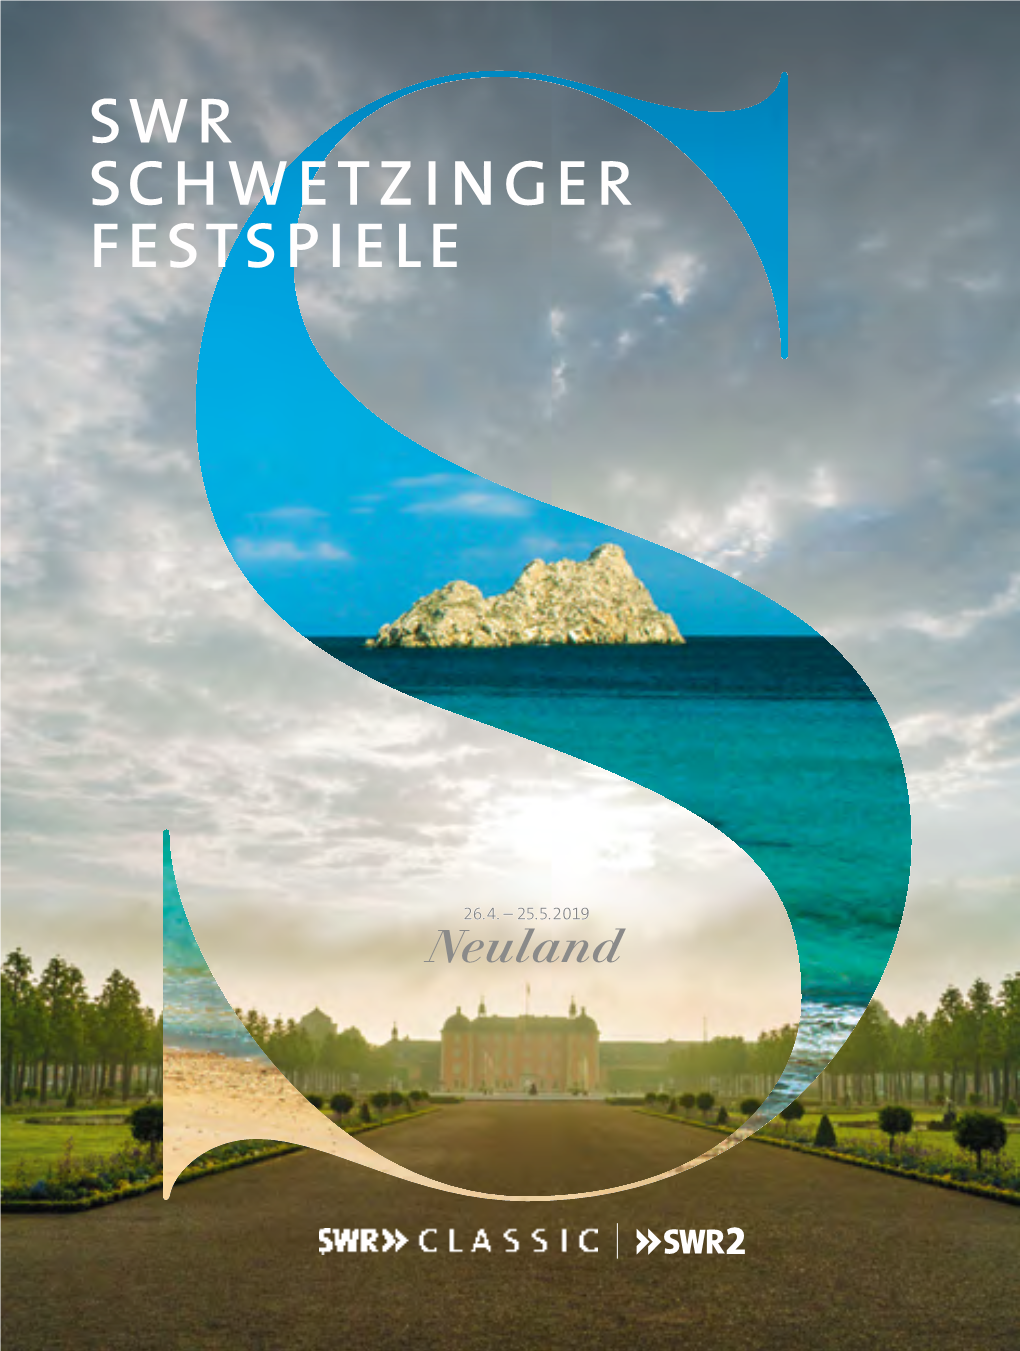 Schwetzinger SWR Festspiele 2019